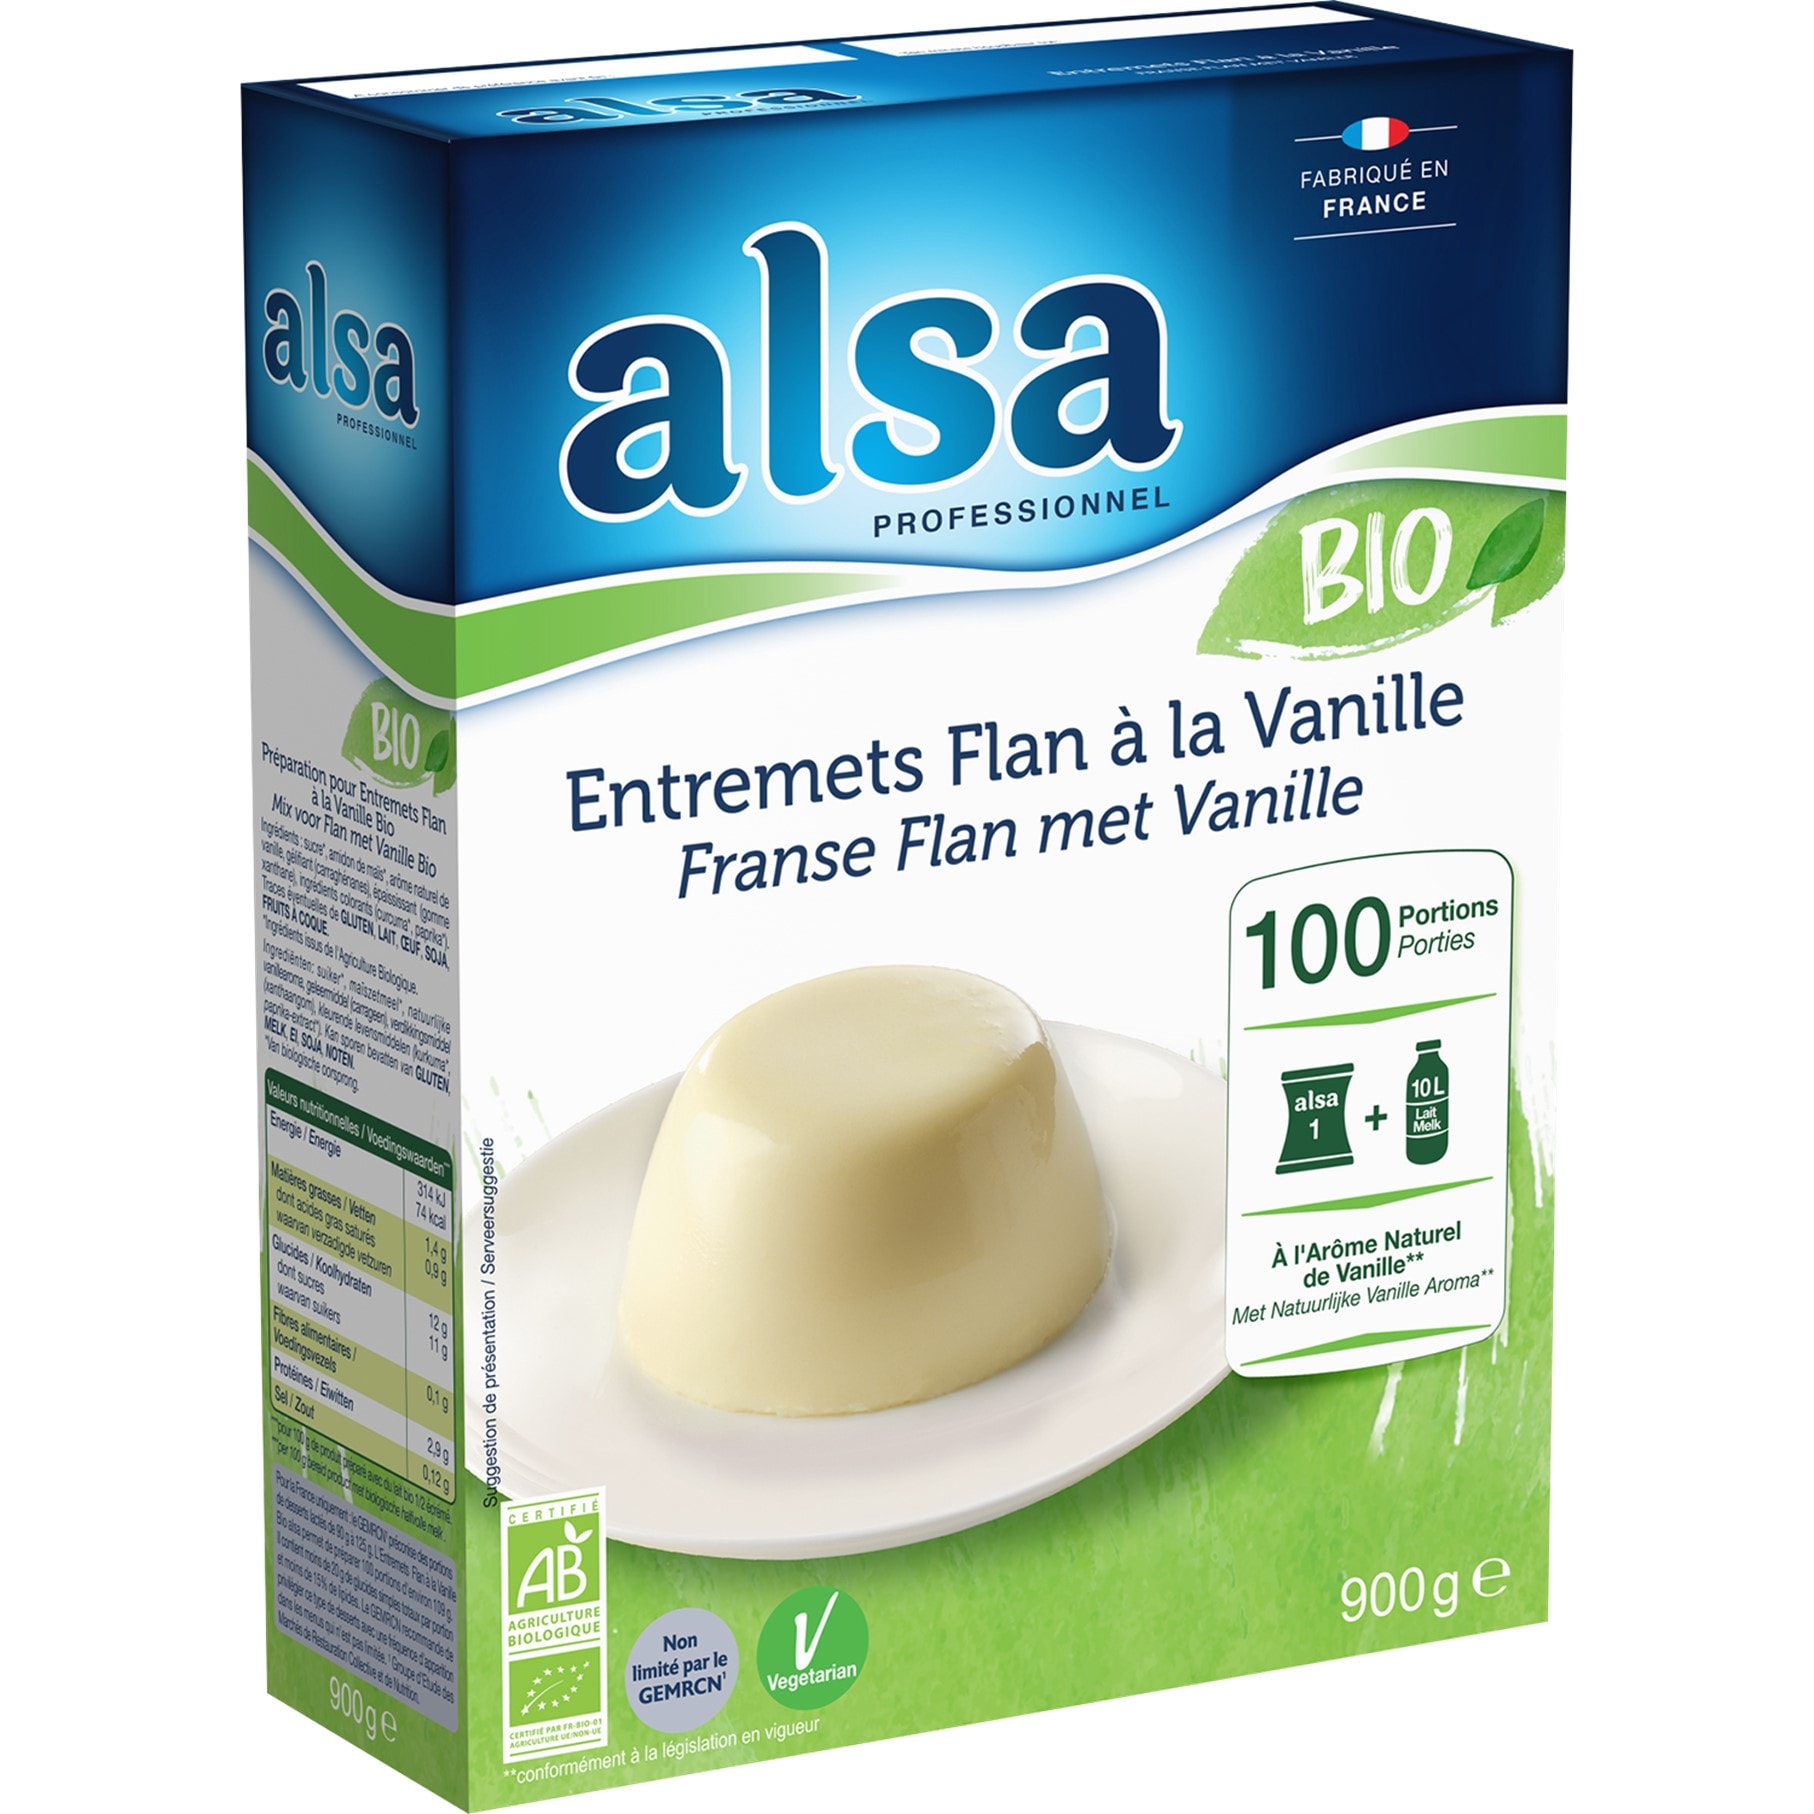 Alsa Entremets Flan à la Vanille Bio 900g 100 portions - L’entremets Flan à la Vanille BIO alsa me permet de réaliser facilement de savoureux desserts bio